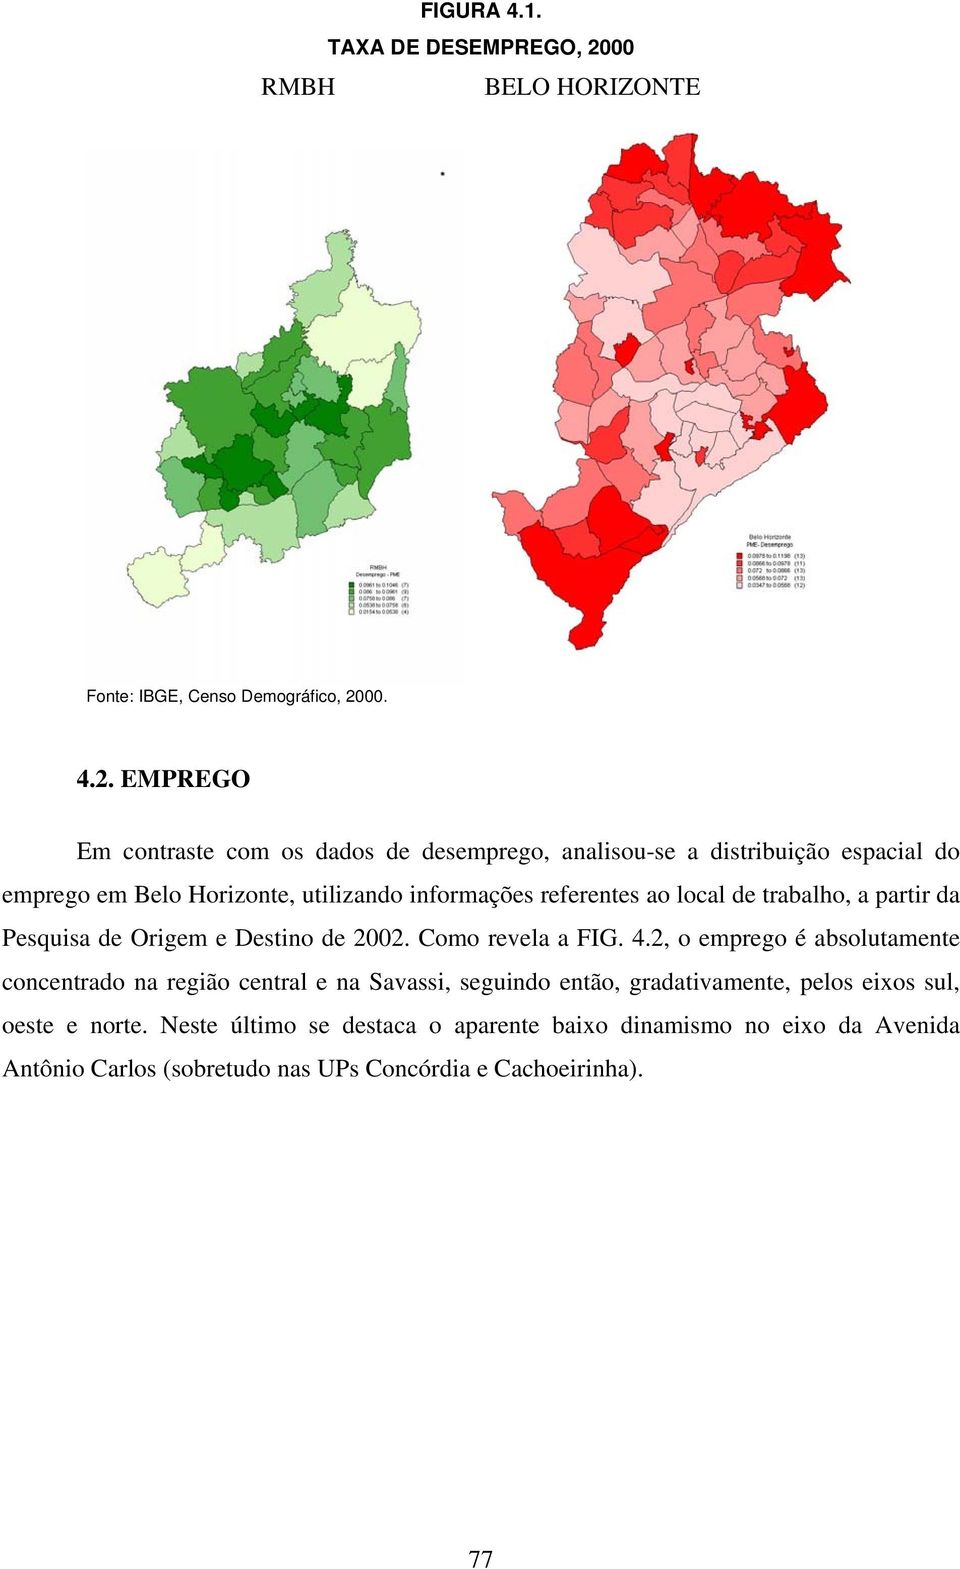 EMPREGO Em contraste com os dados de desemprego, analisou-se a distribuição espacial do emprego em Belo Horizonte, utilizando informações